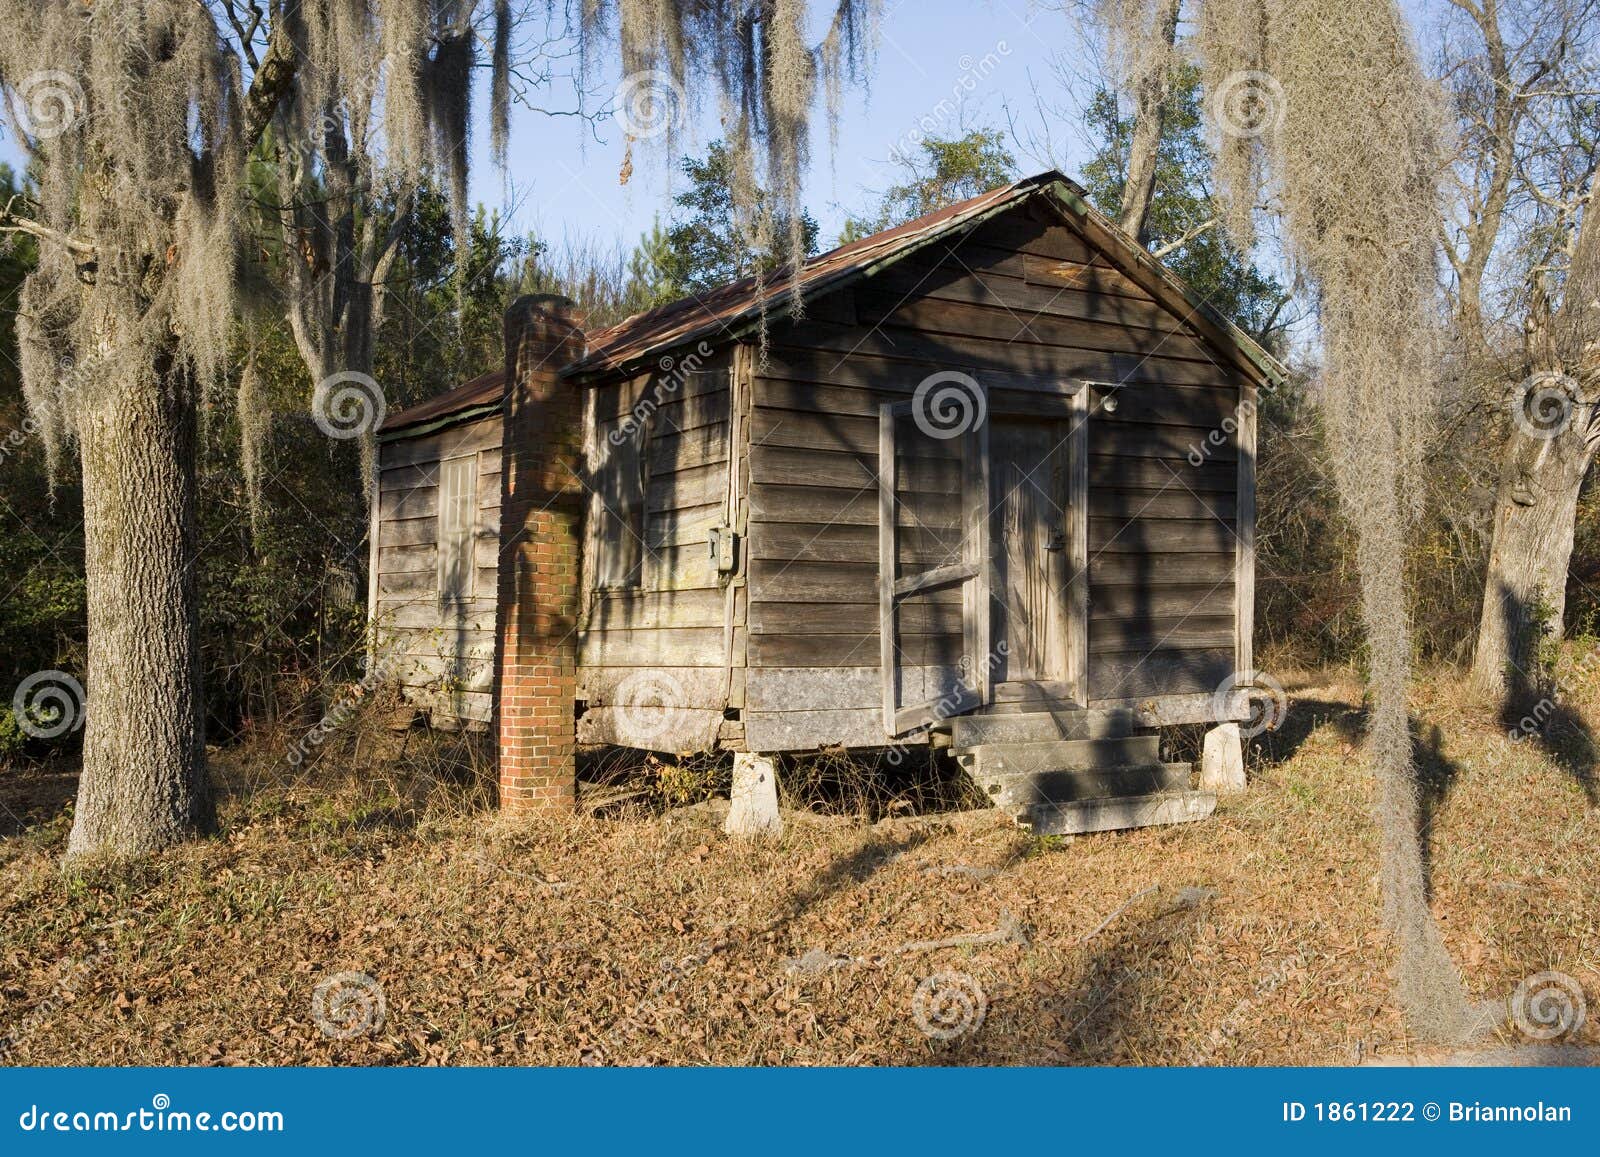 shack-woods-1861222.jpg